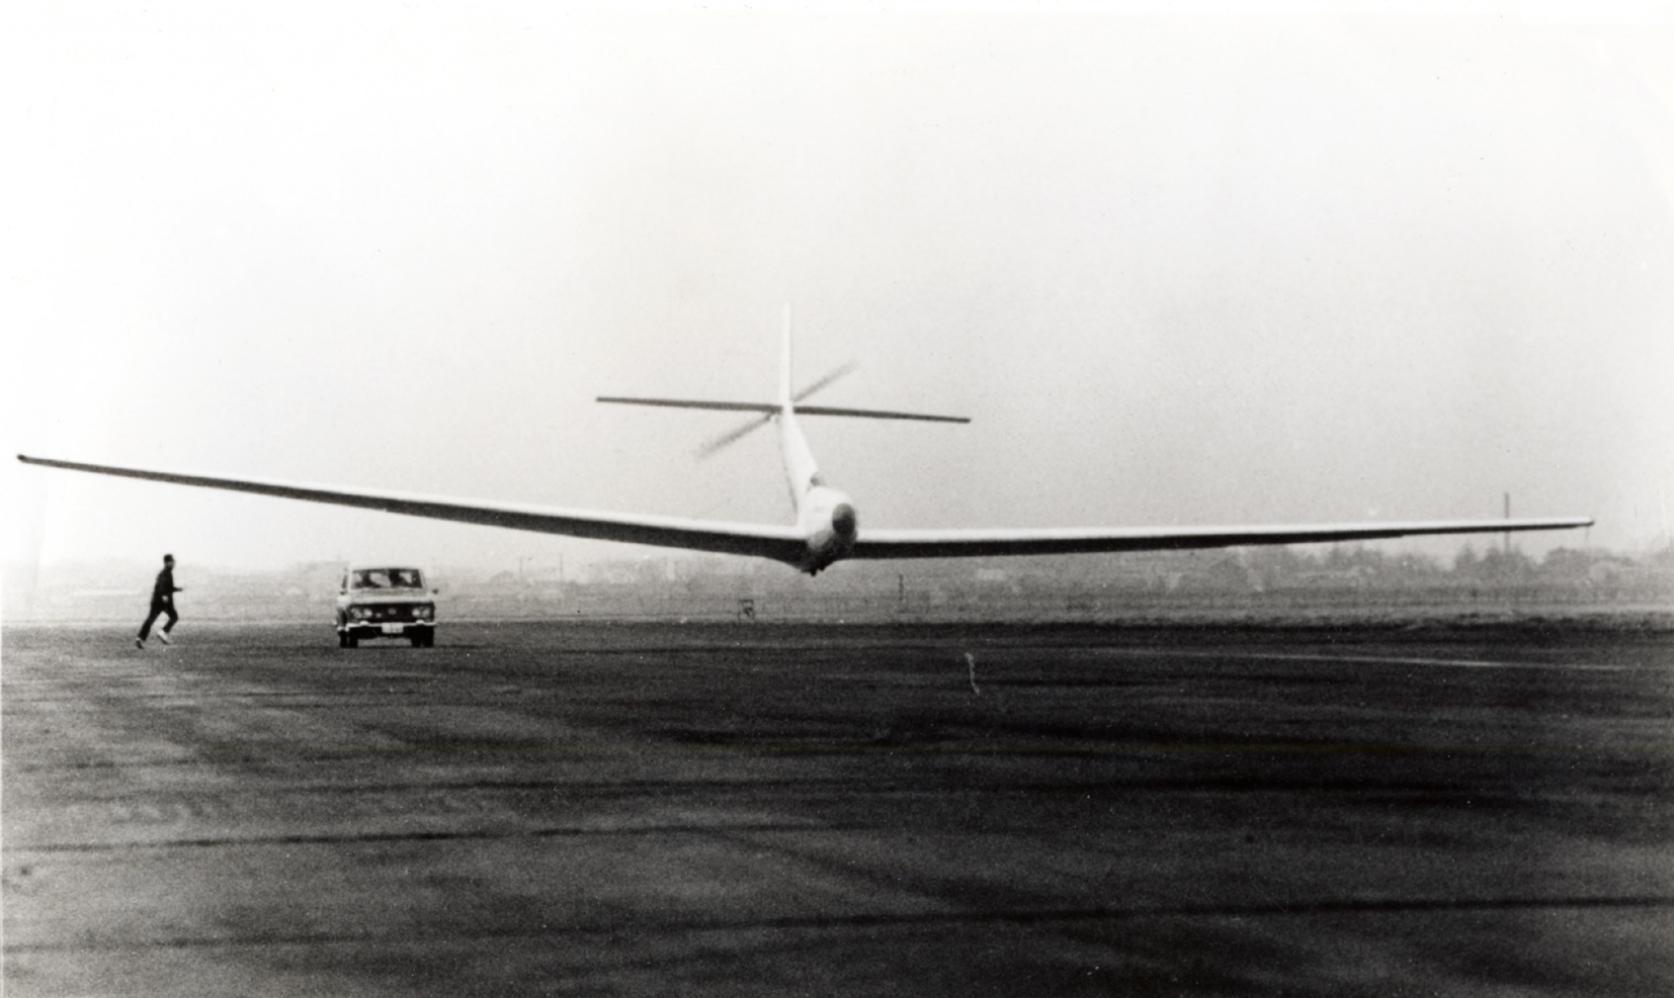 【2月27日】1966年の本日、日本大学理工学部の人力飛行機 「リネット号」が、調布飛行場にて日本初の人力飛行に成功しました。